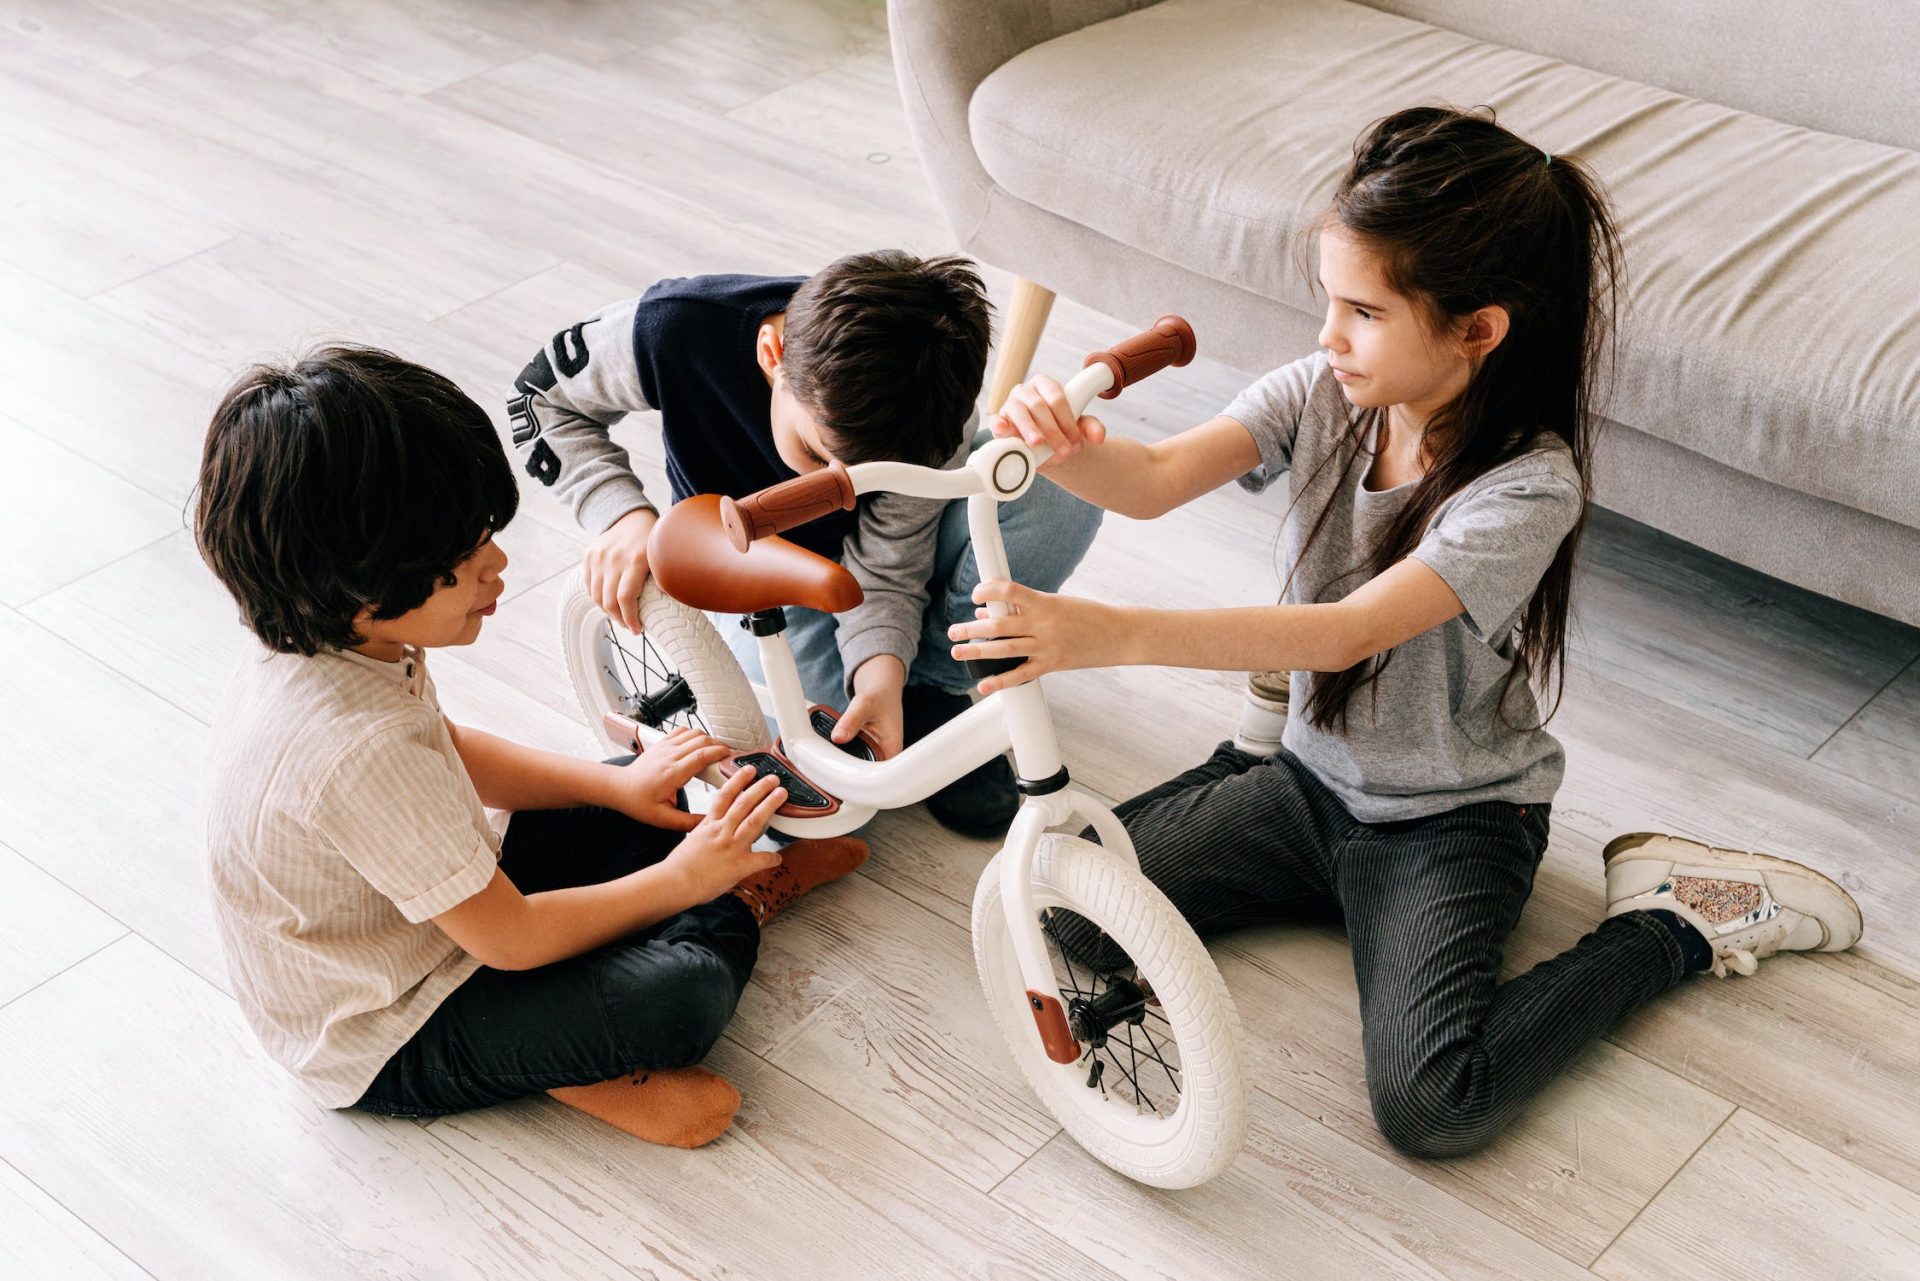 niños y niñas jugando con una bicicleta, biología juguetes